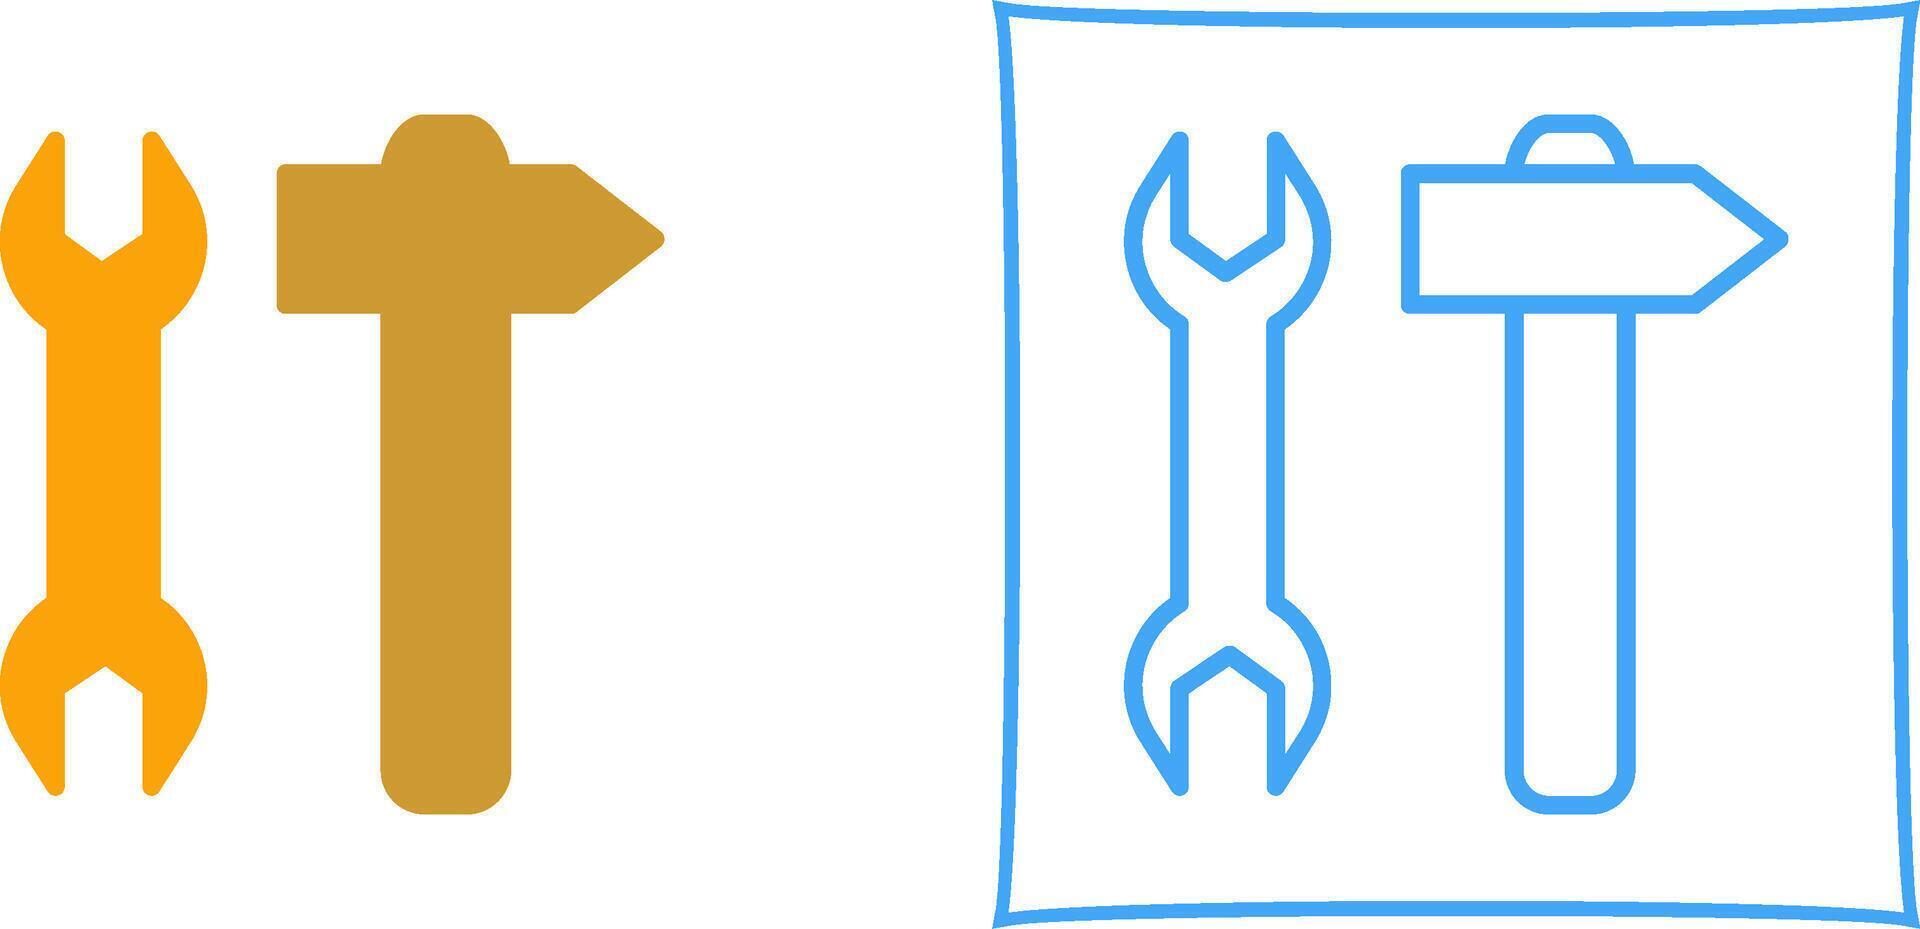 Tools Vector Icon